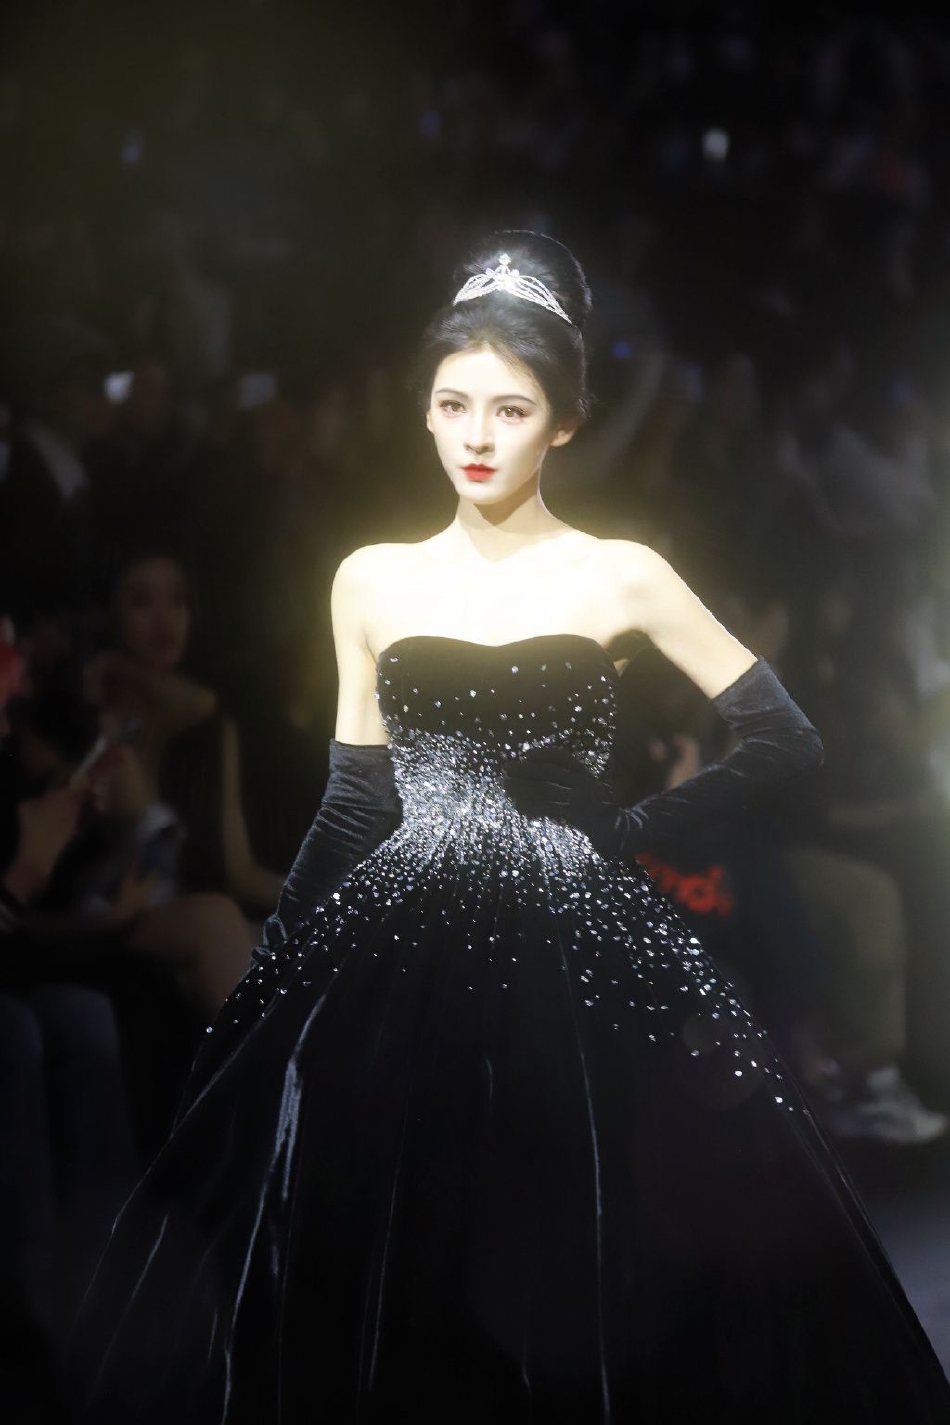 张予曦在上海时装周走秀 盘发搭配黑礼裙妥妥气质女神